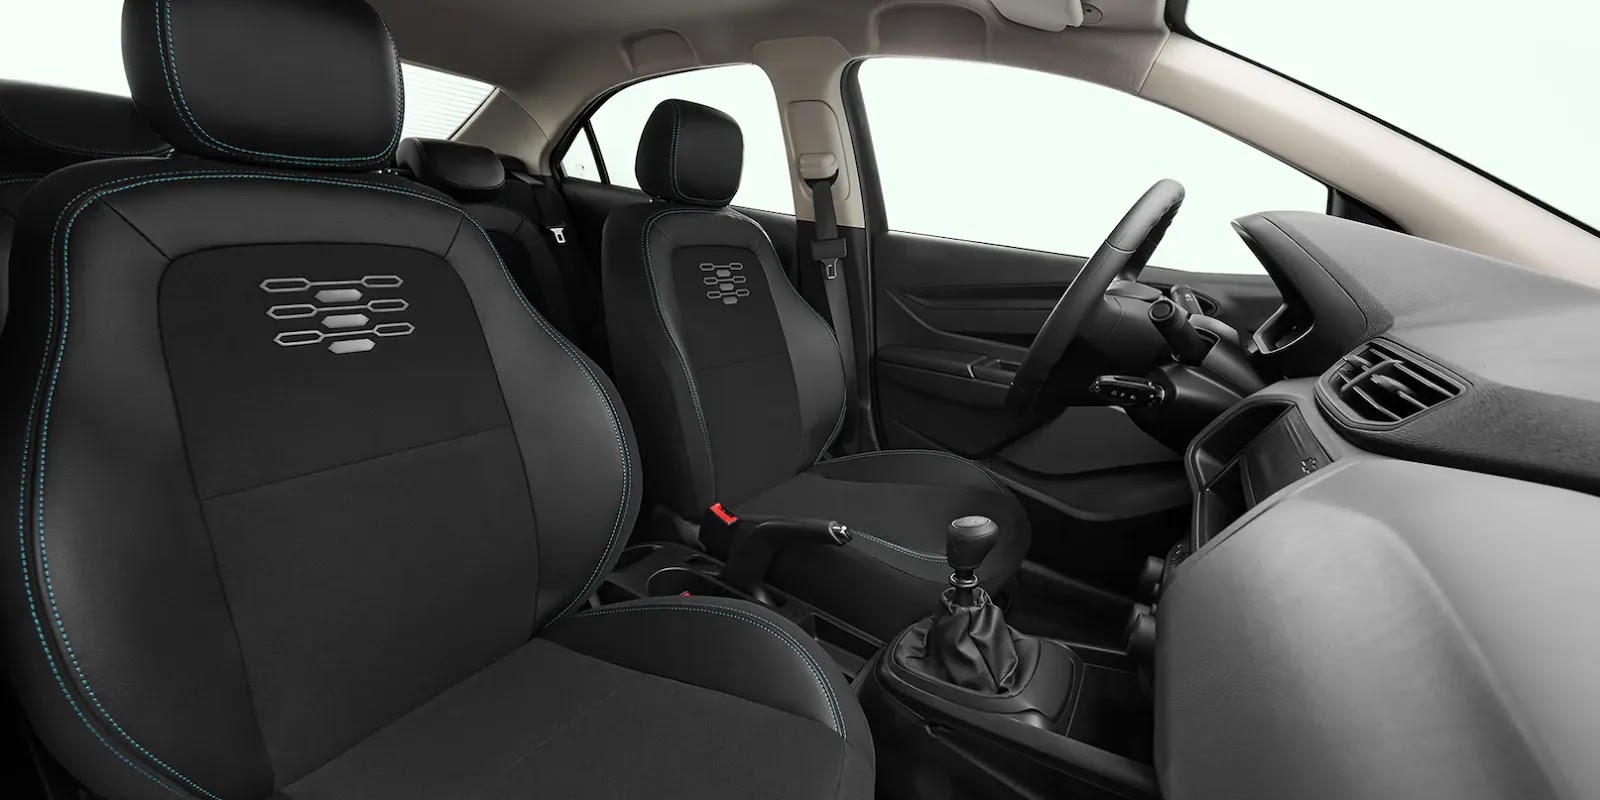 Novo Chevrolet Joy Plus 2020: fotos, preços e detalhes